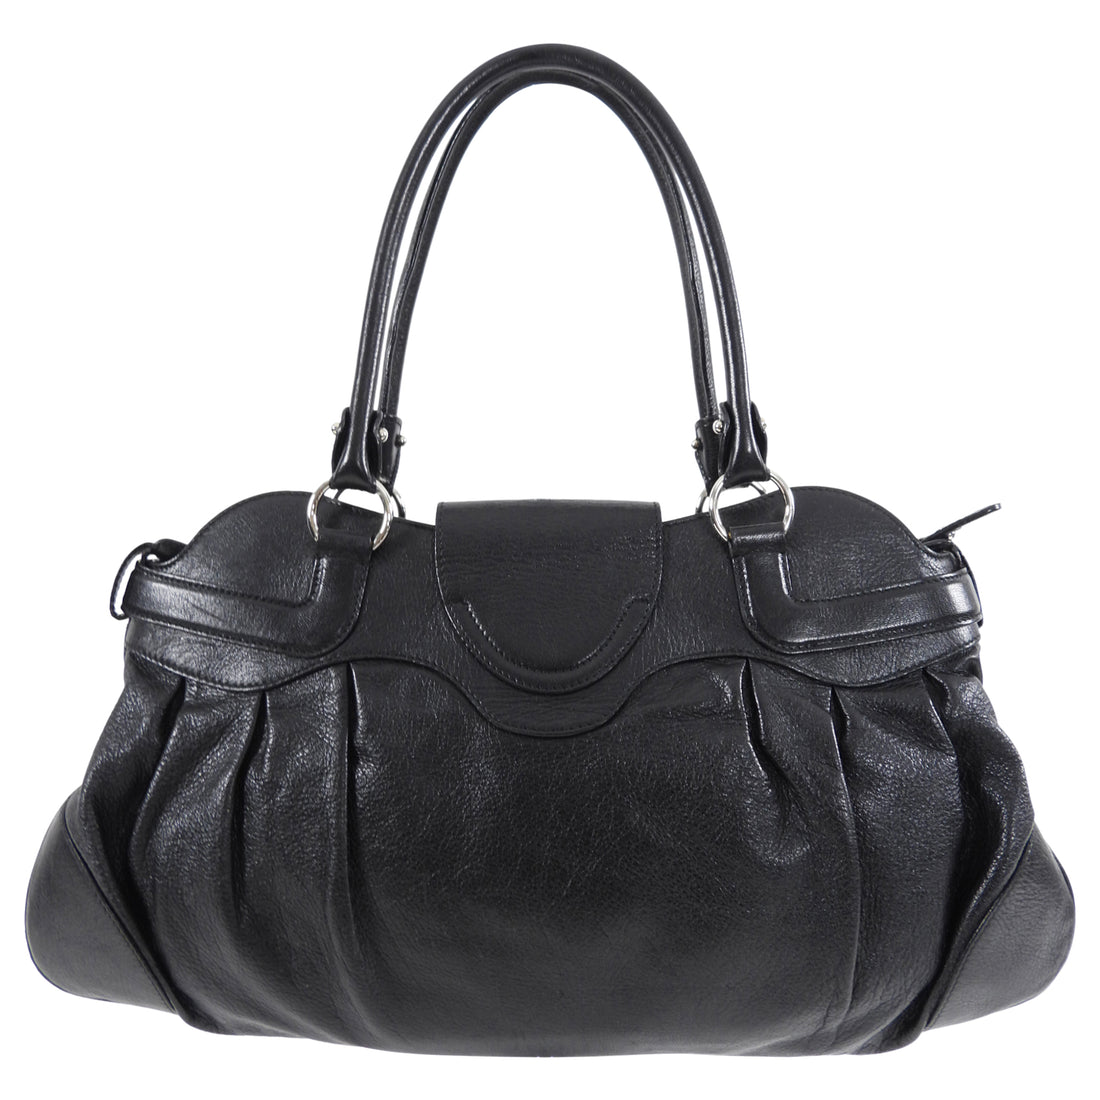 Ferragamo Black Leather Marisa Hobo Bag – I MISS YOU VINTAGE